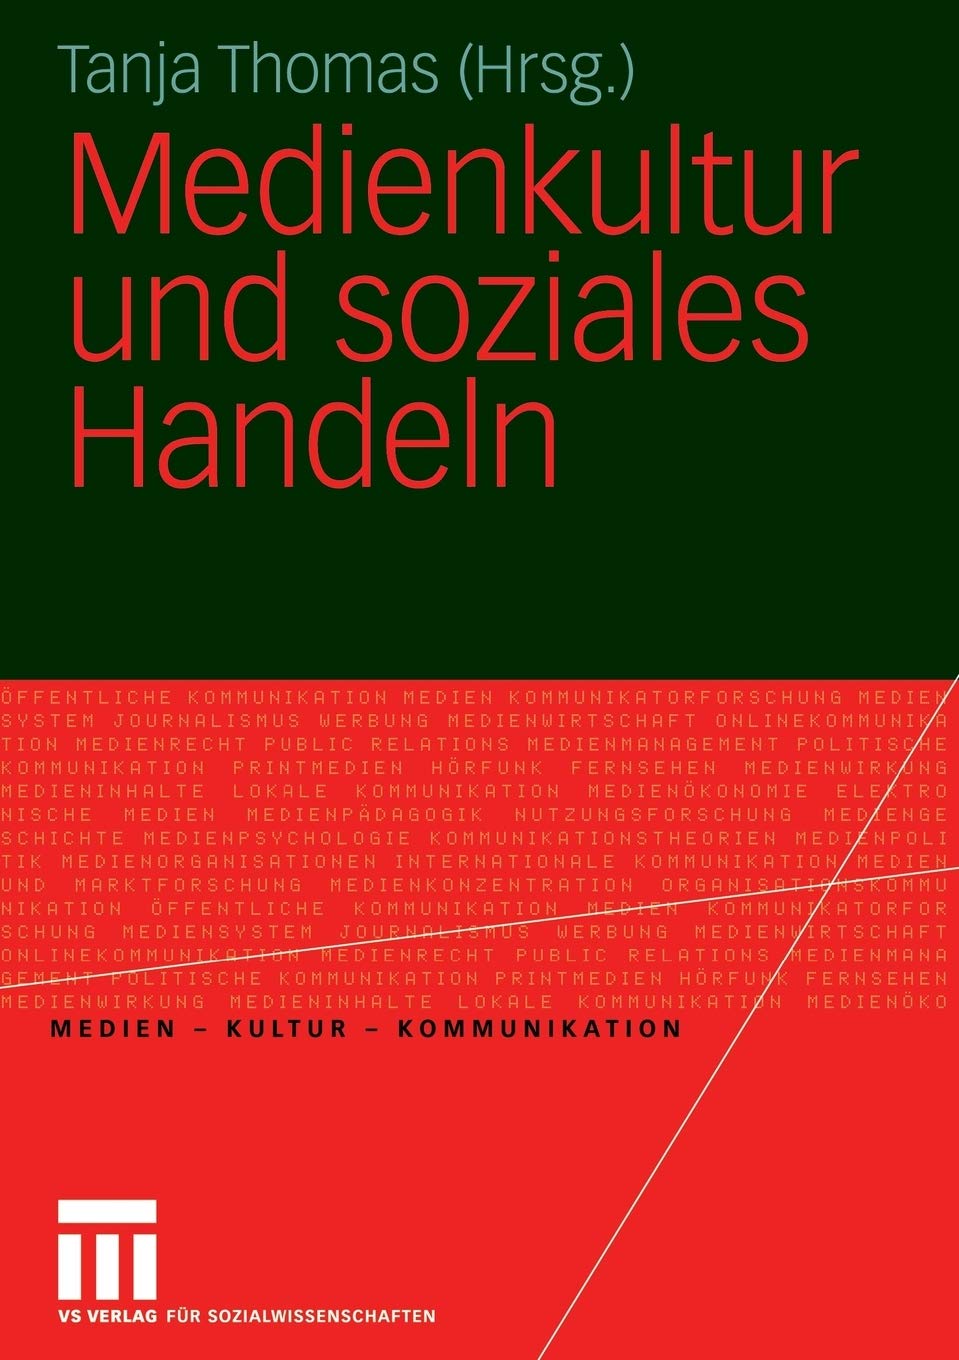 Cover:: Dagmar Hoffmann: Theoretische und empirische Facetten des komplexen Beziehungsgeflechts Medienkultur und soziales Handeln